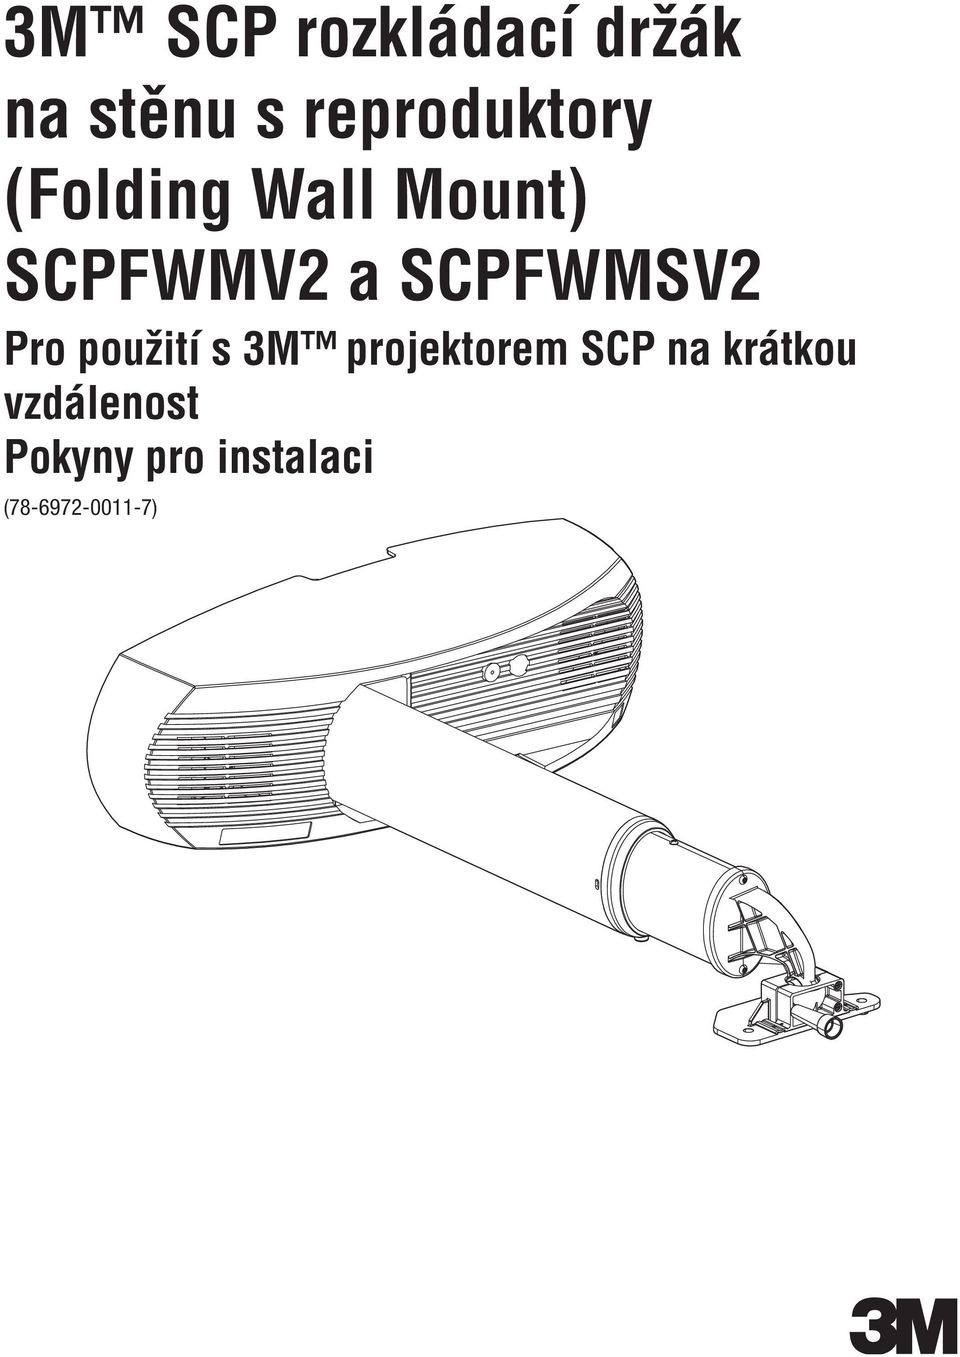 SCPFWMSV2 Pro použití s 3M projektorem SCP na